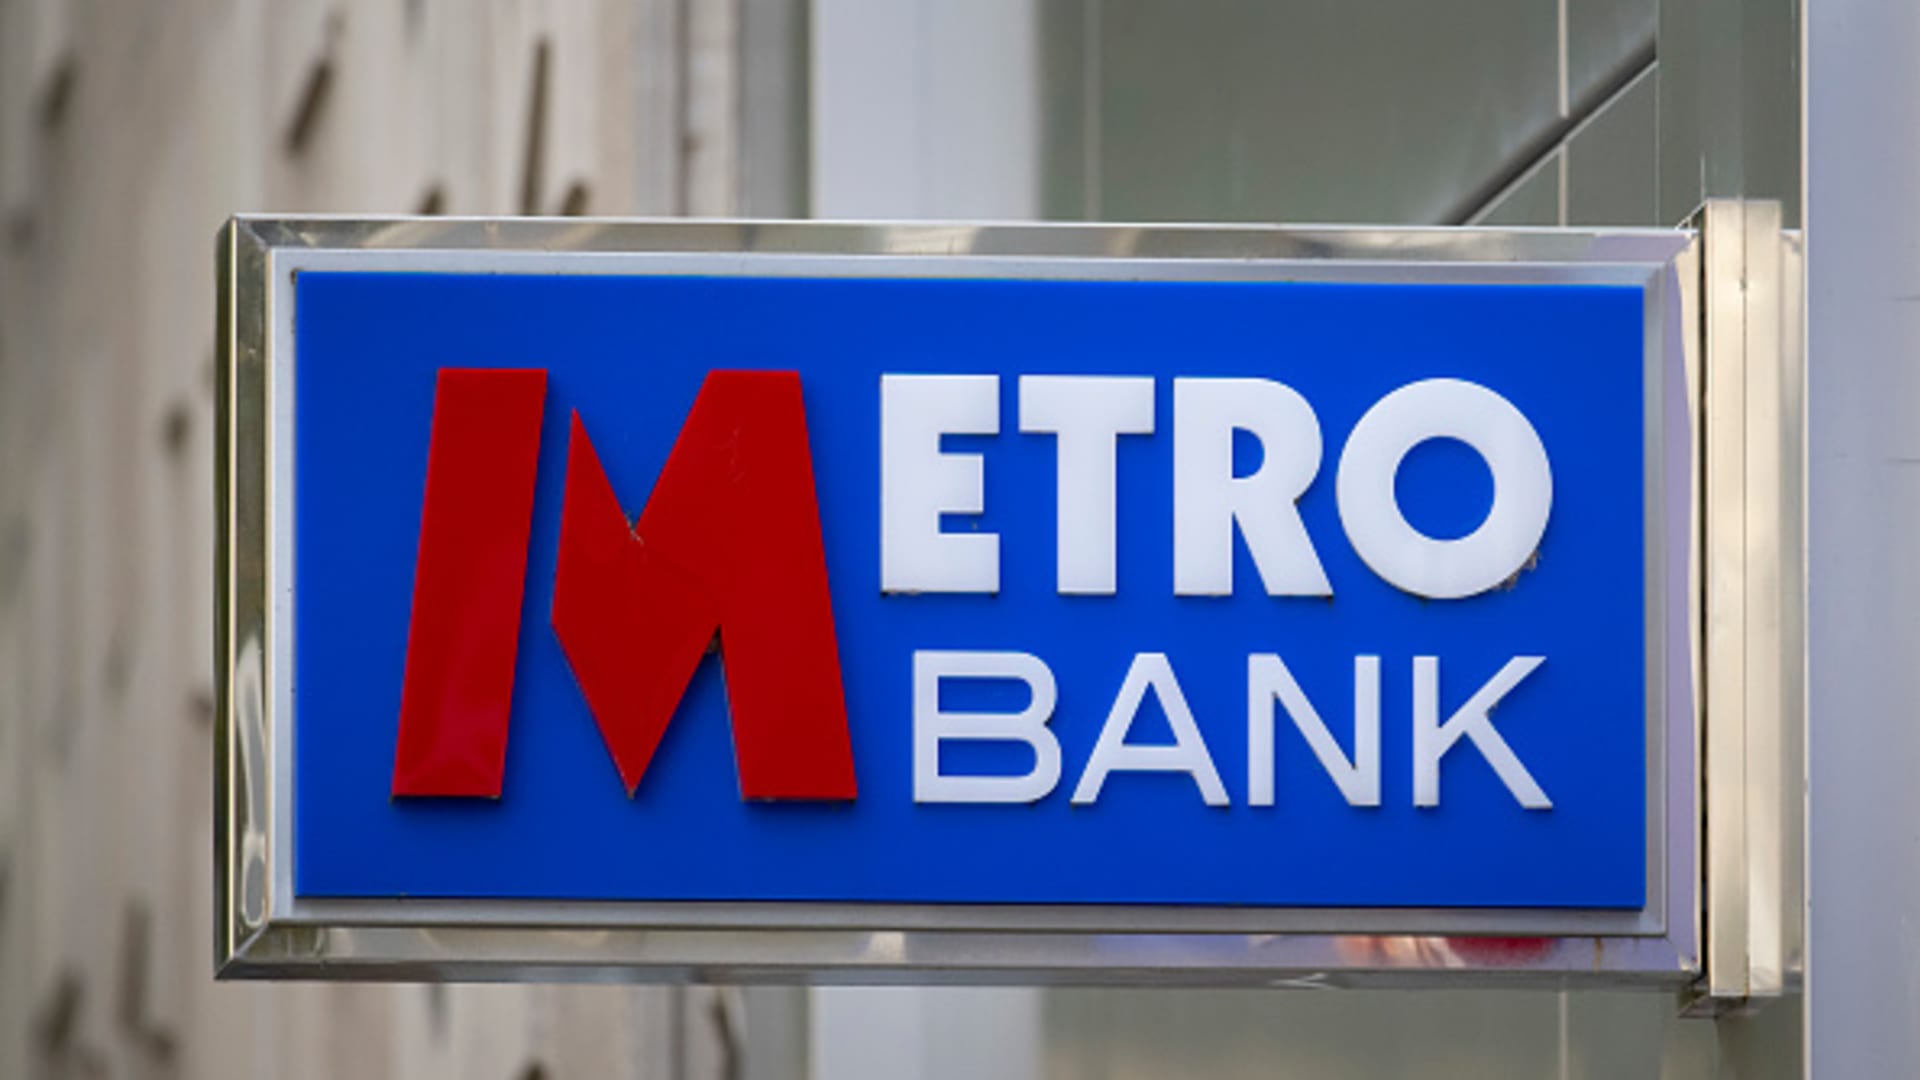 Las acciones de UK Metro Bank suspendidas varias veces después de caer más del 25%